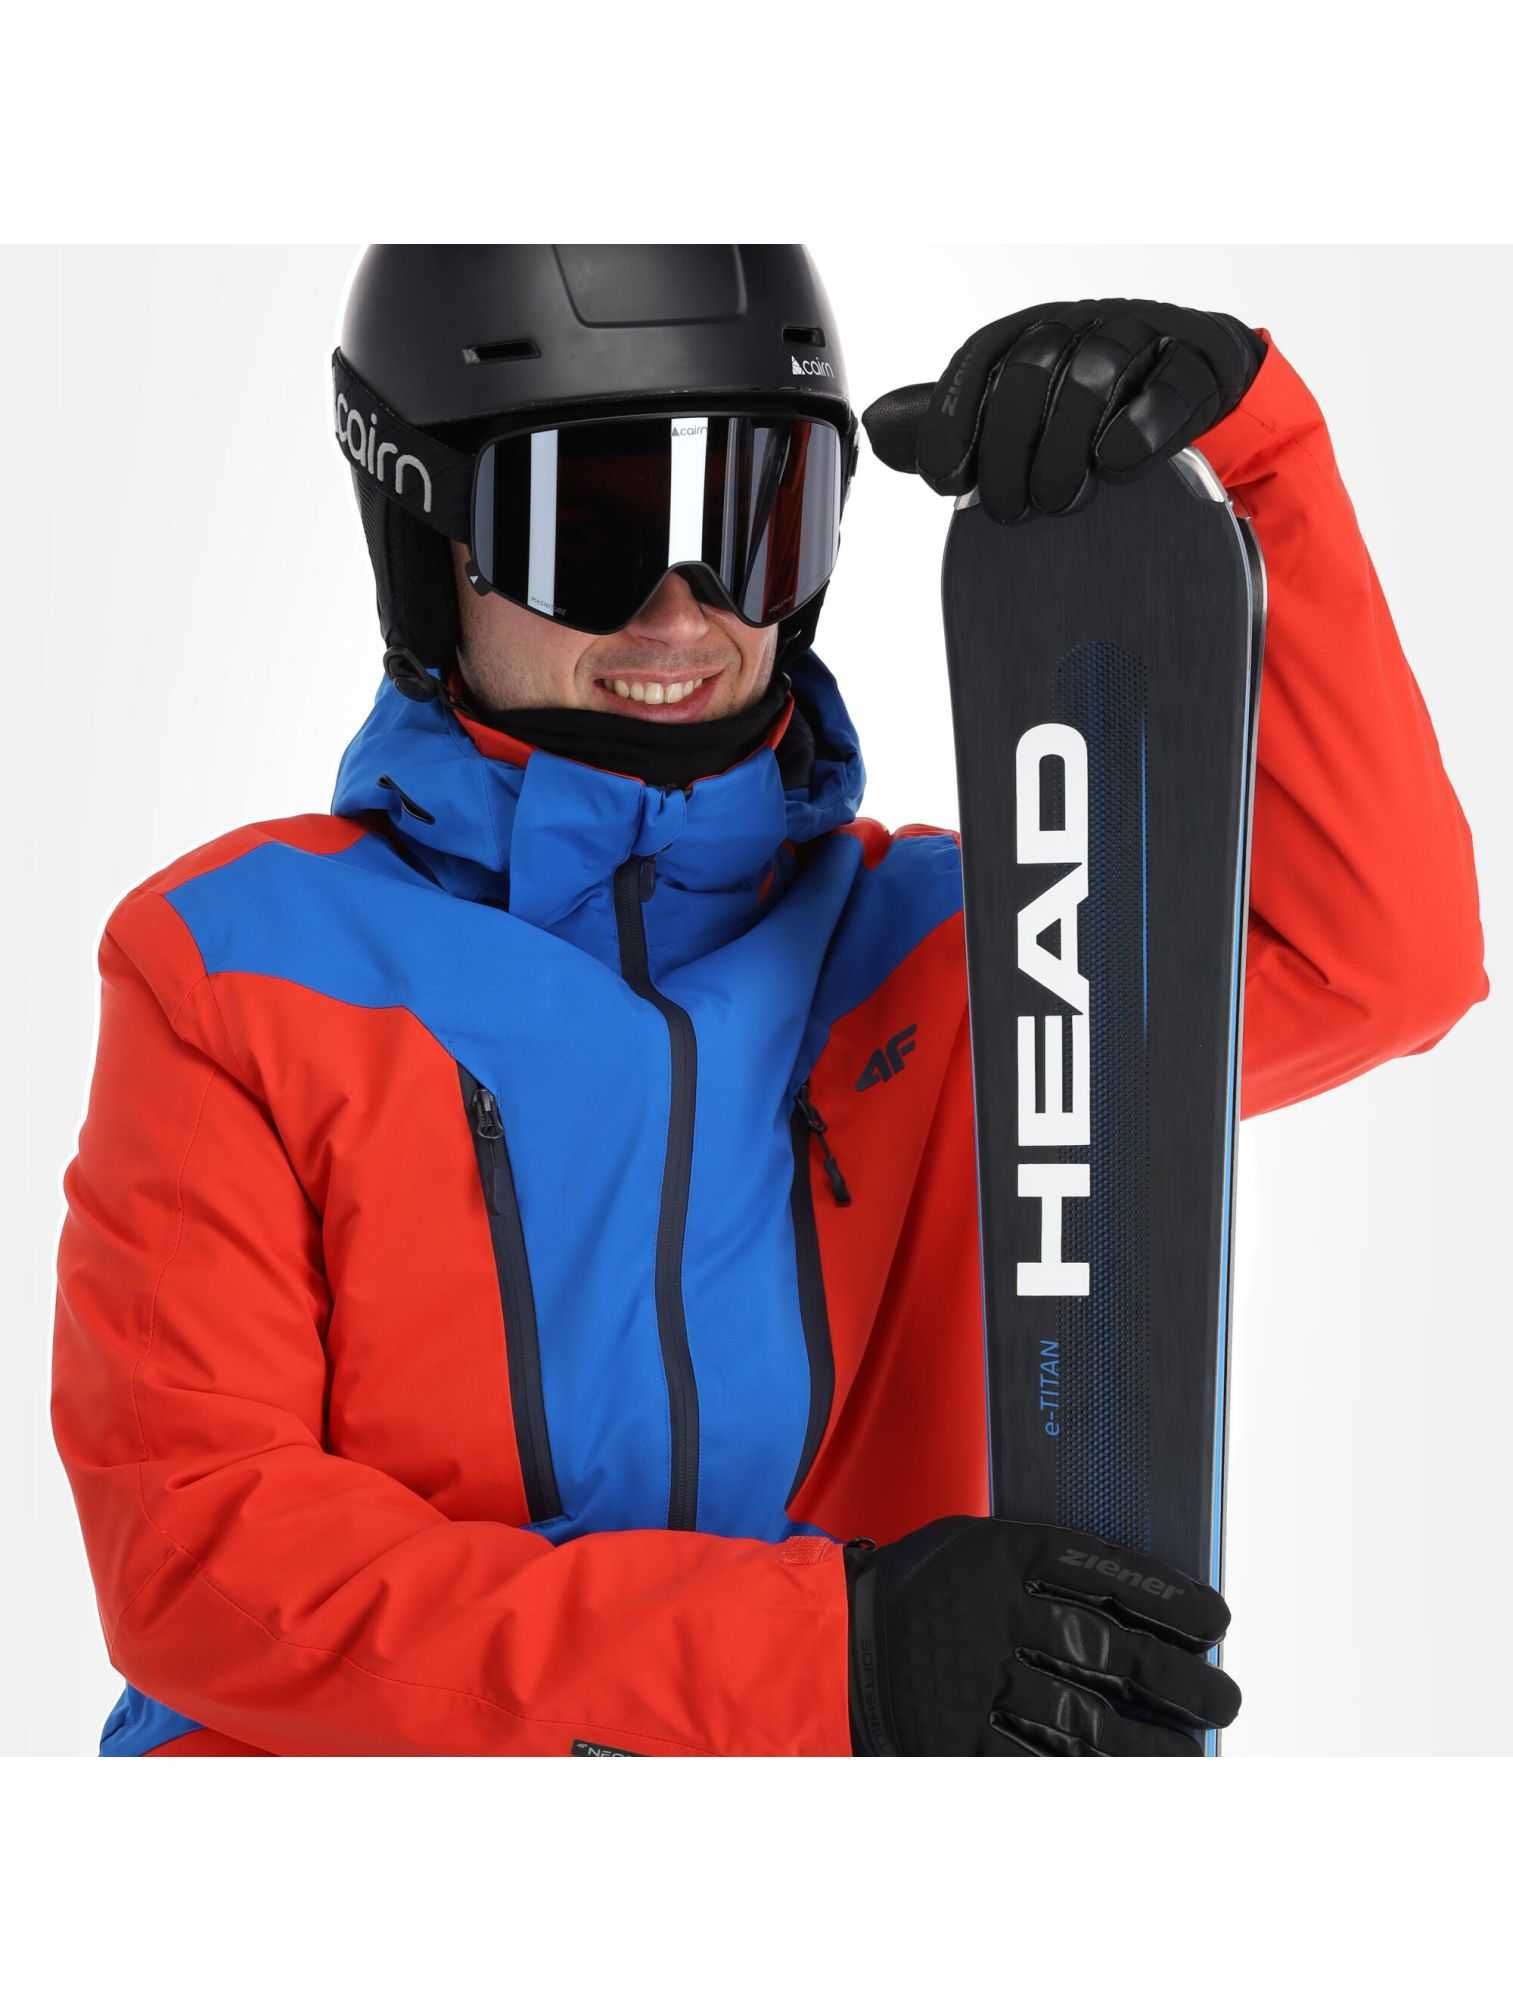 4F, 2XL/3XL, ново, оригинално мъжко ски/сноуборд яке